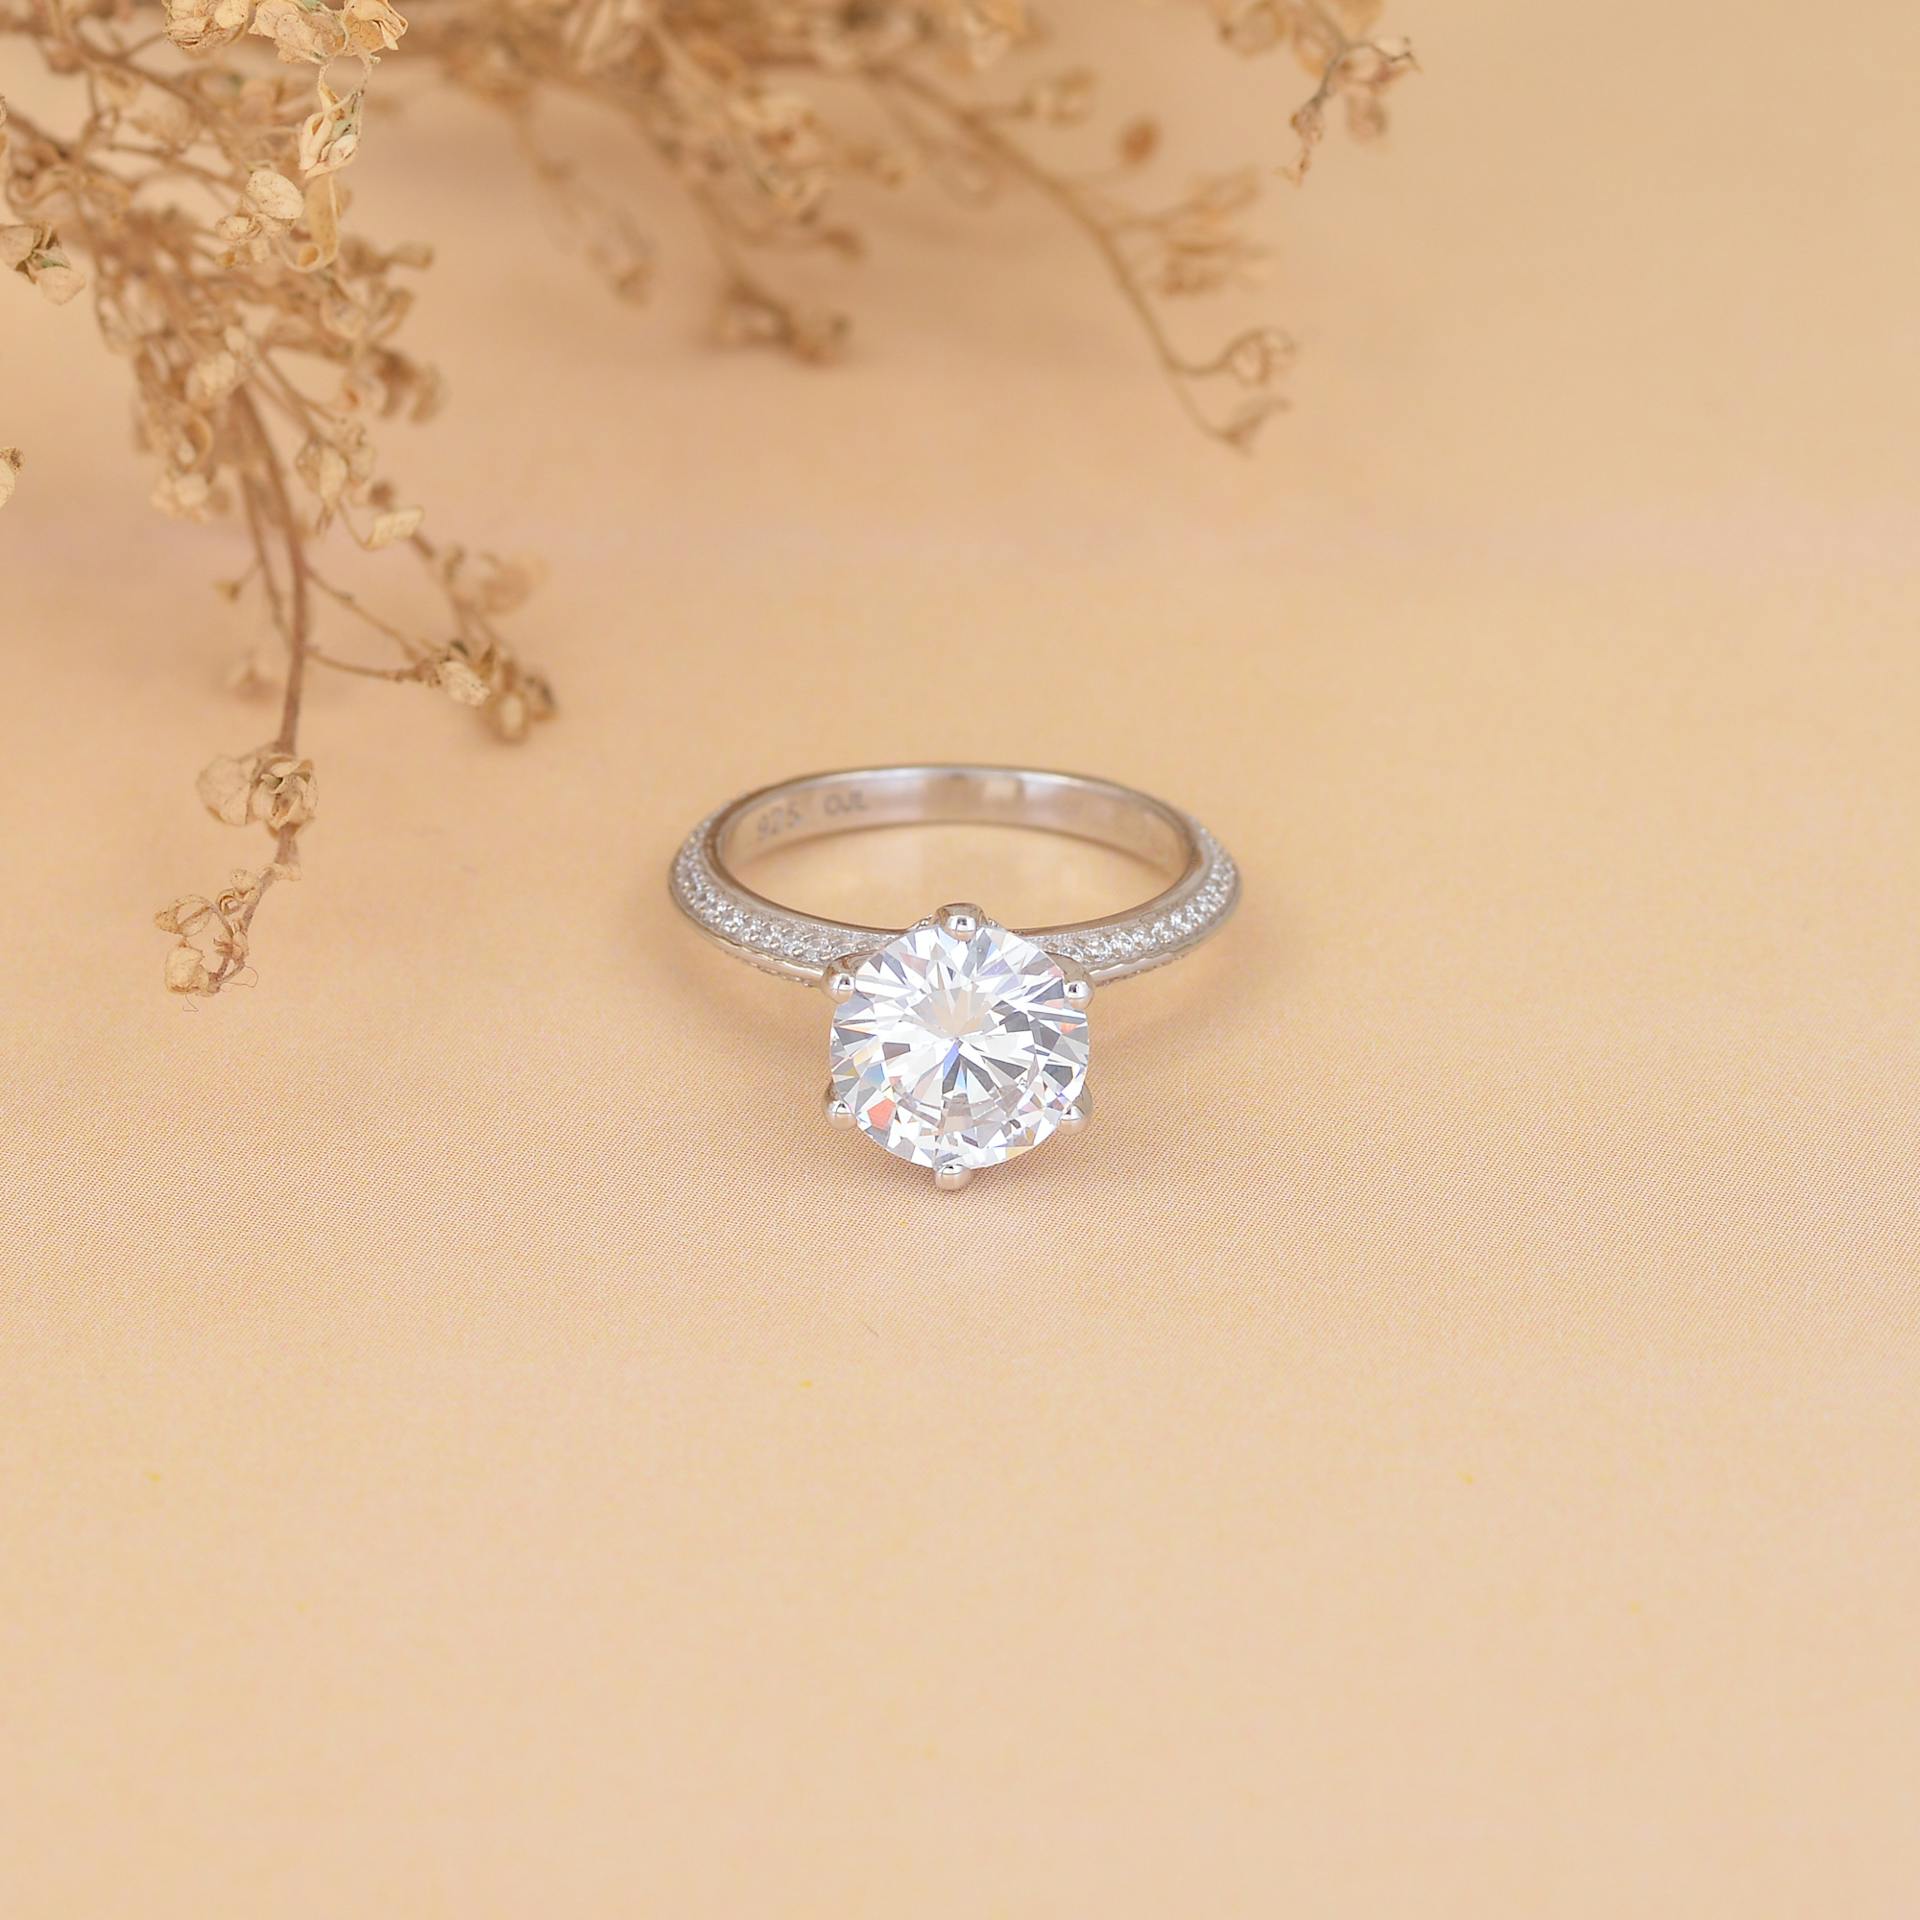 2 Carat Lab Grown Diamond Engagement Ring